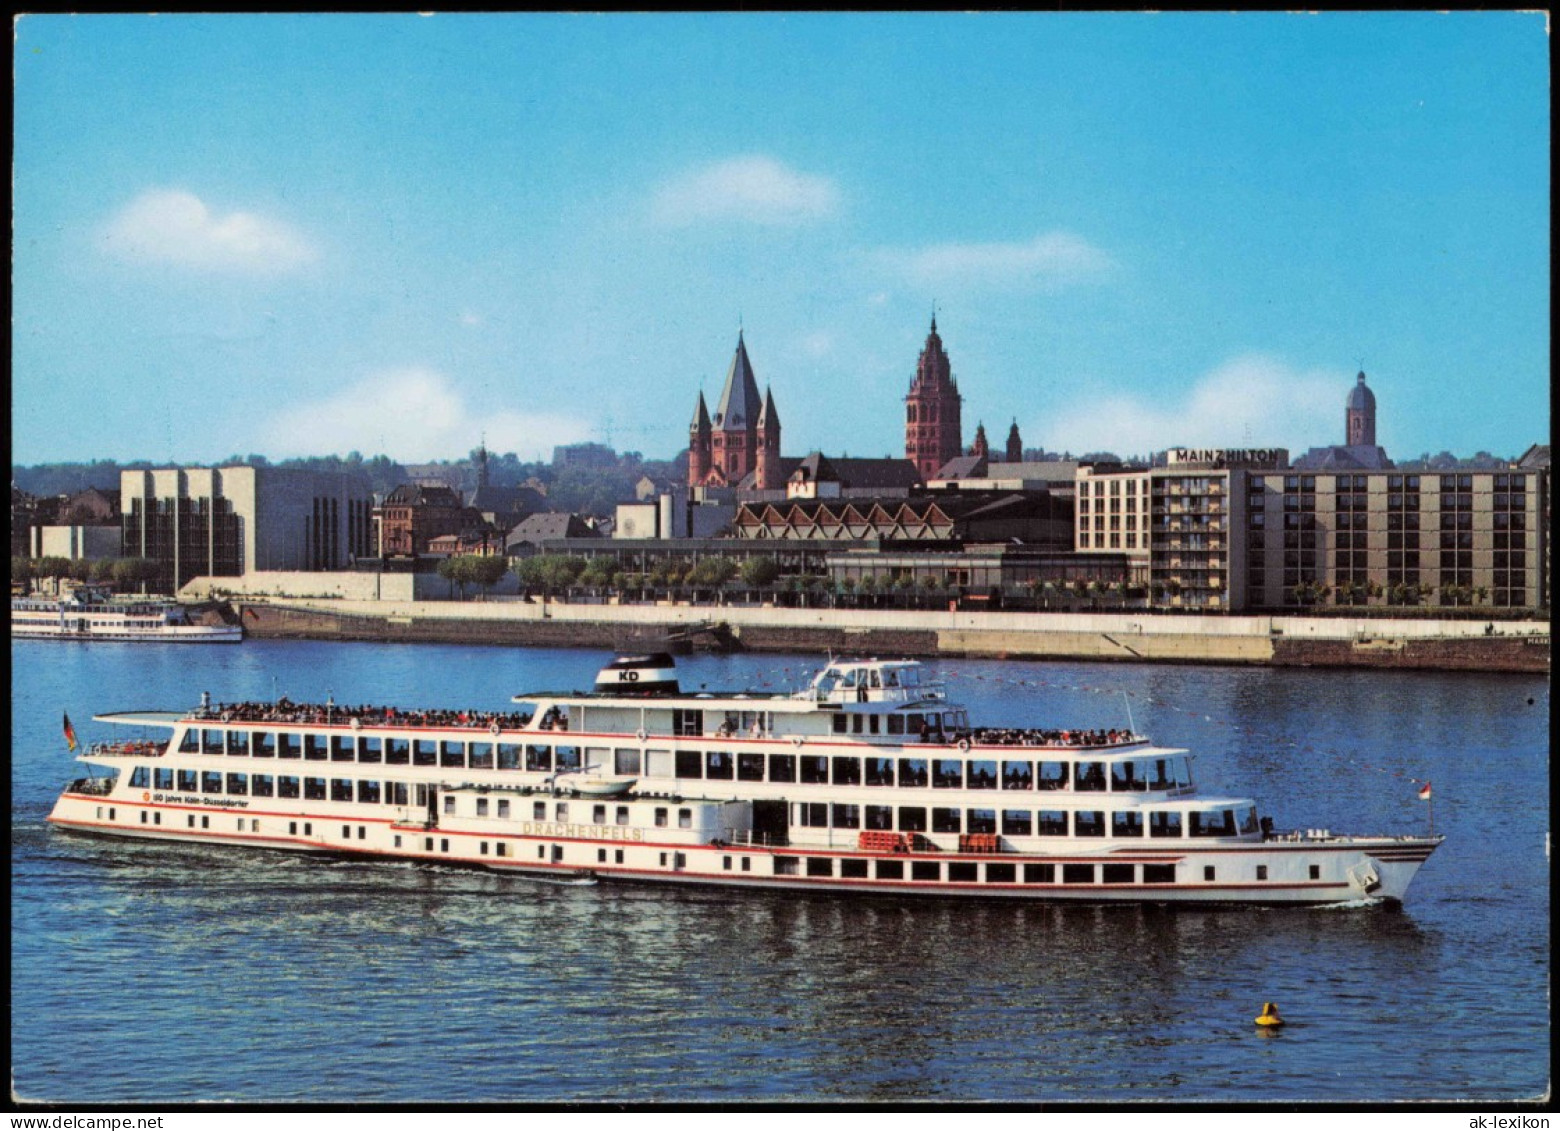 Ansichtskarte Mainz Rheinufer, Rheinschiff Passagierschiff 1988 - Mainz